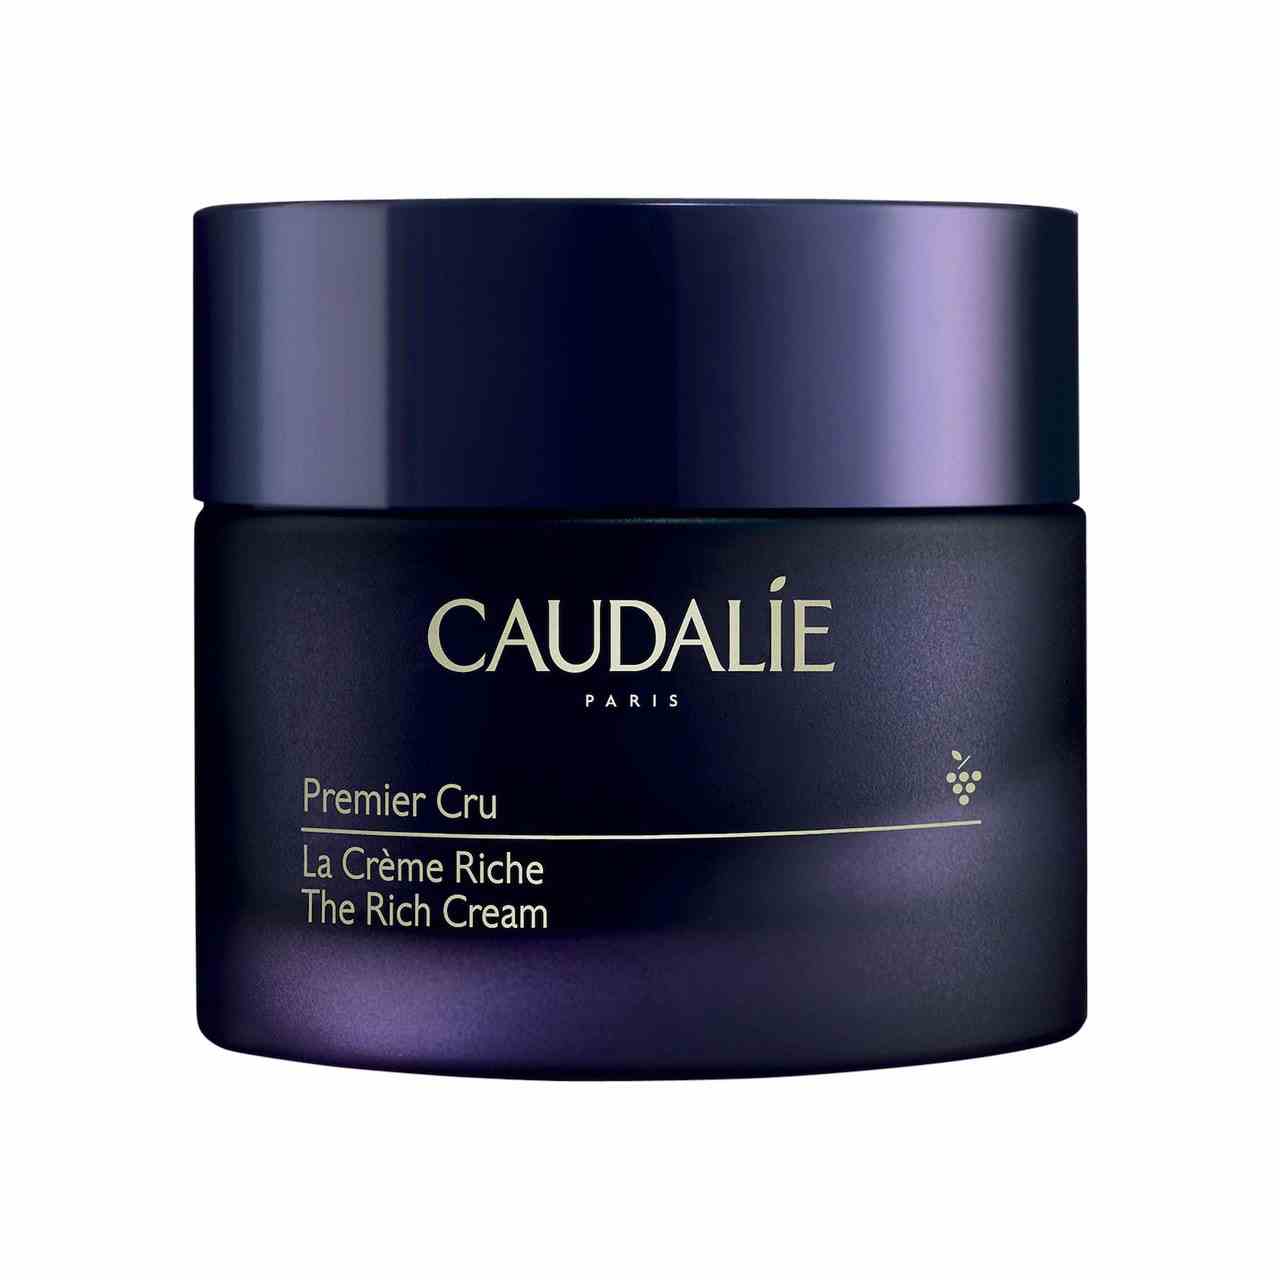 Caudalie Premier Cru The Rich Cream dunkelviolettes blaues Glas auf weißem Hintergrund